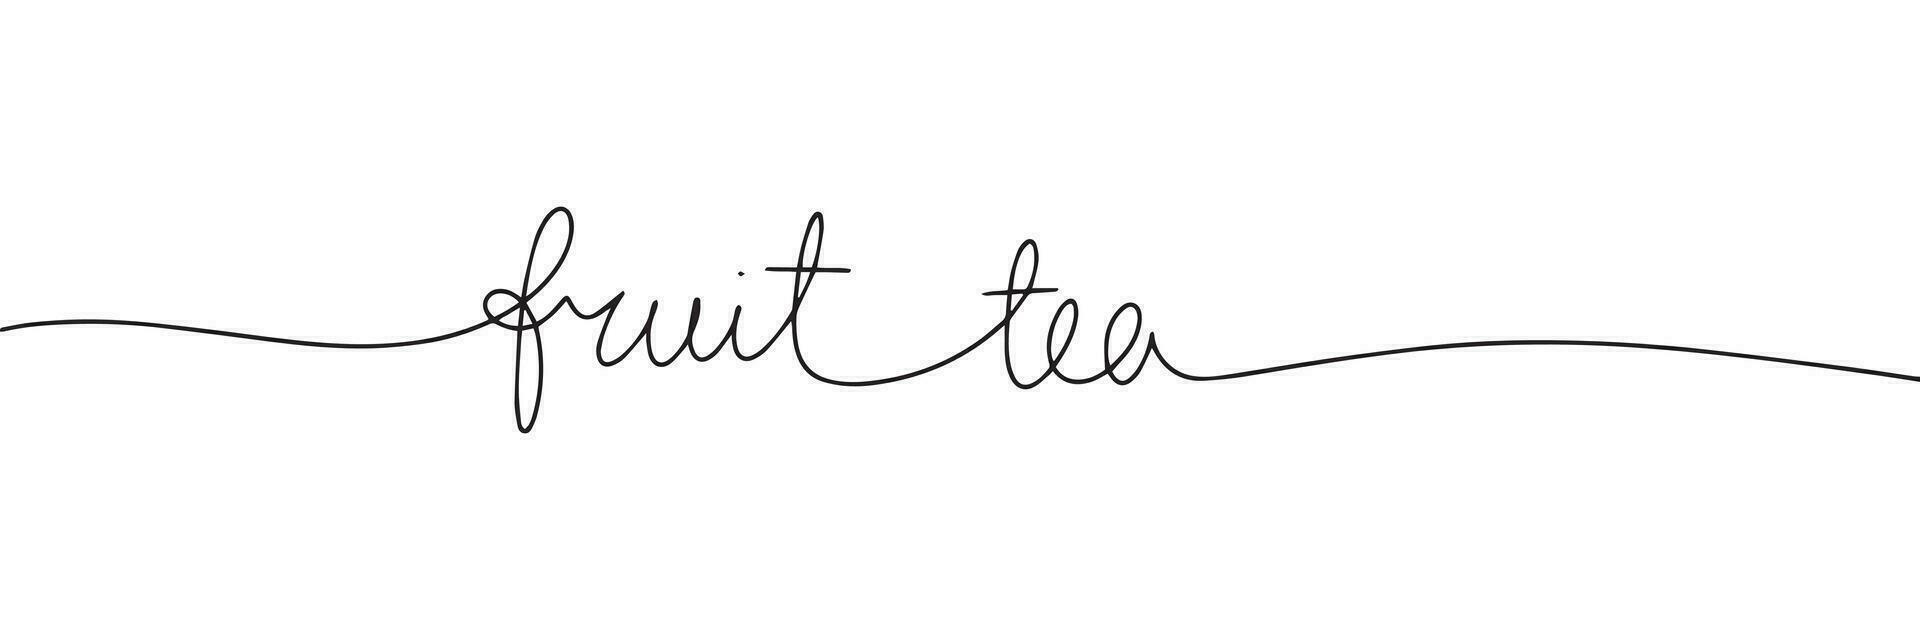 continuo linea disegno di parola frutta tè. uno linea vettore minimalista telaio illustrazione di tè concetto.